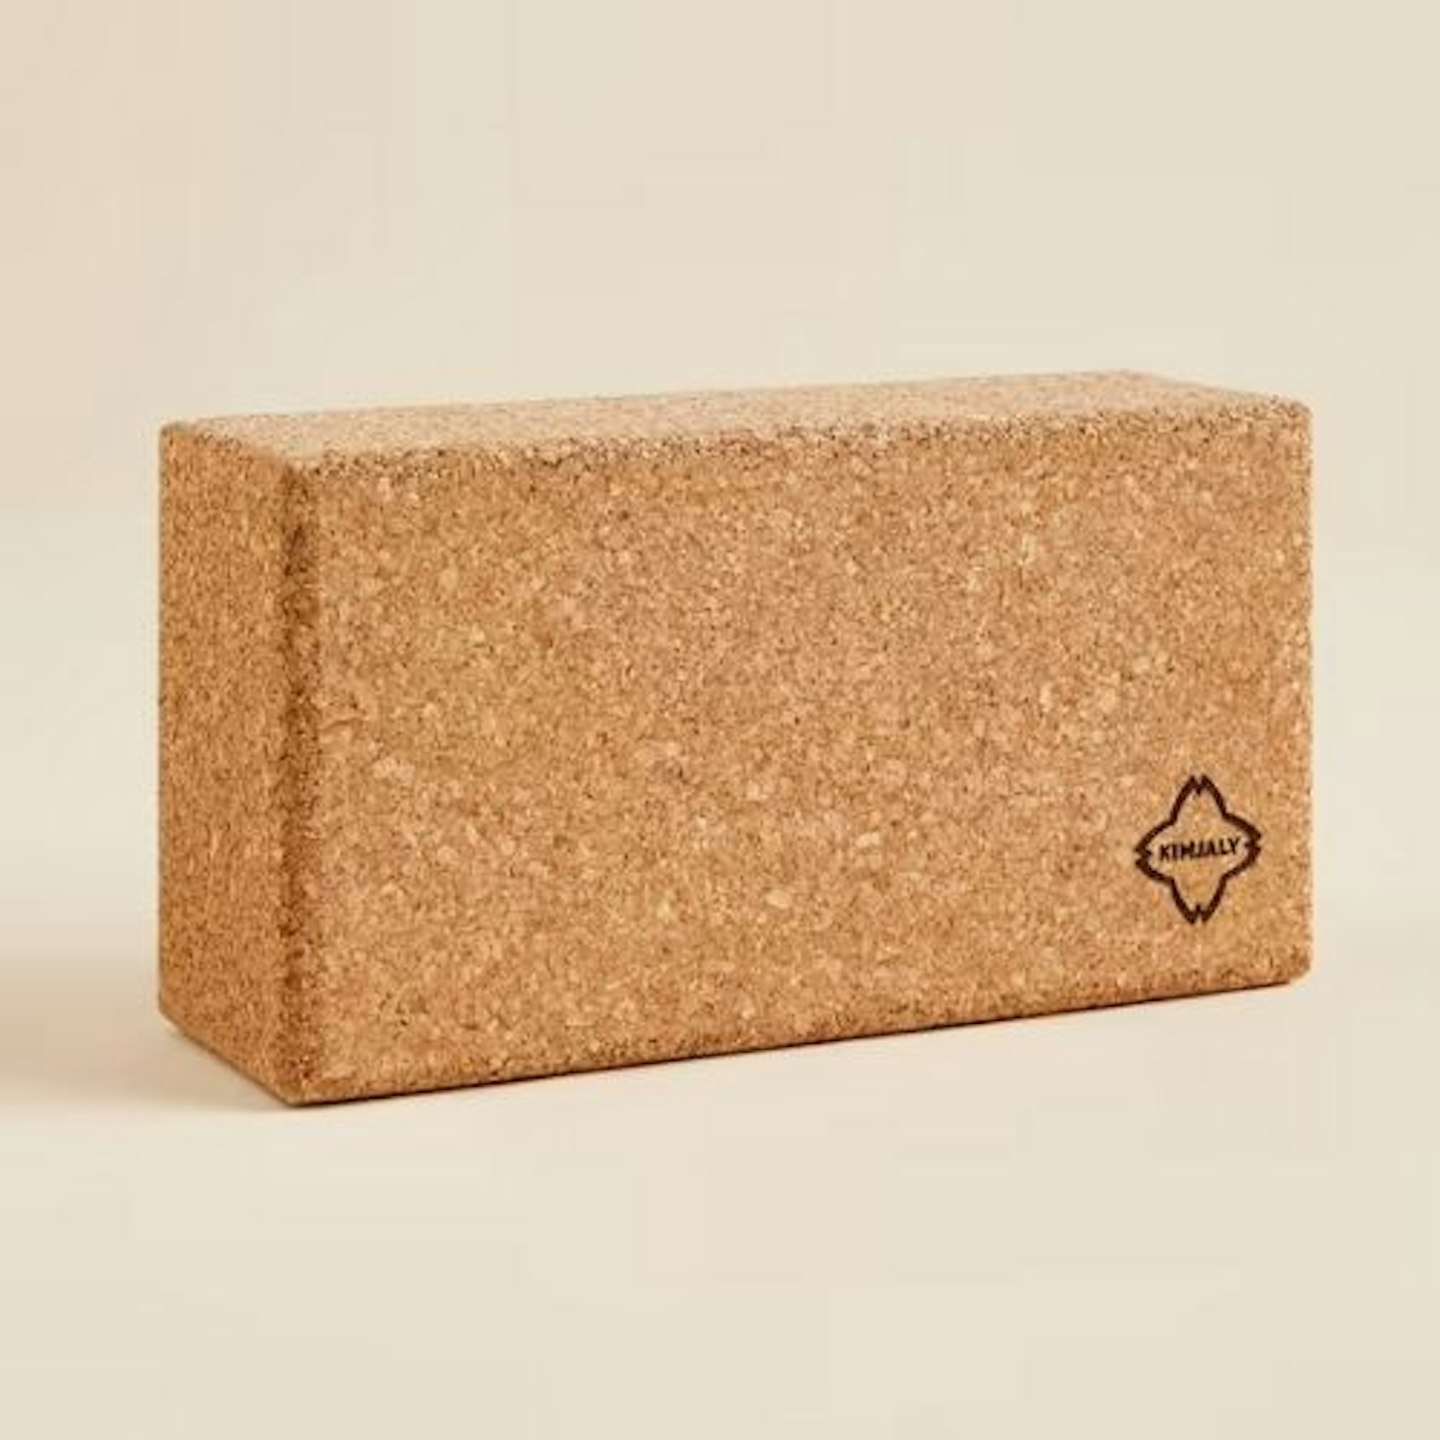 Kimjaly Eco-Designed Cork Yoga Brick